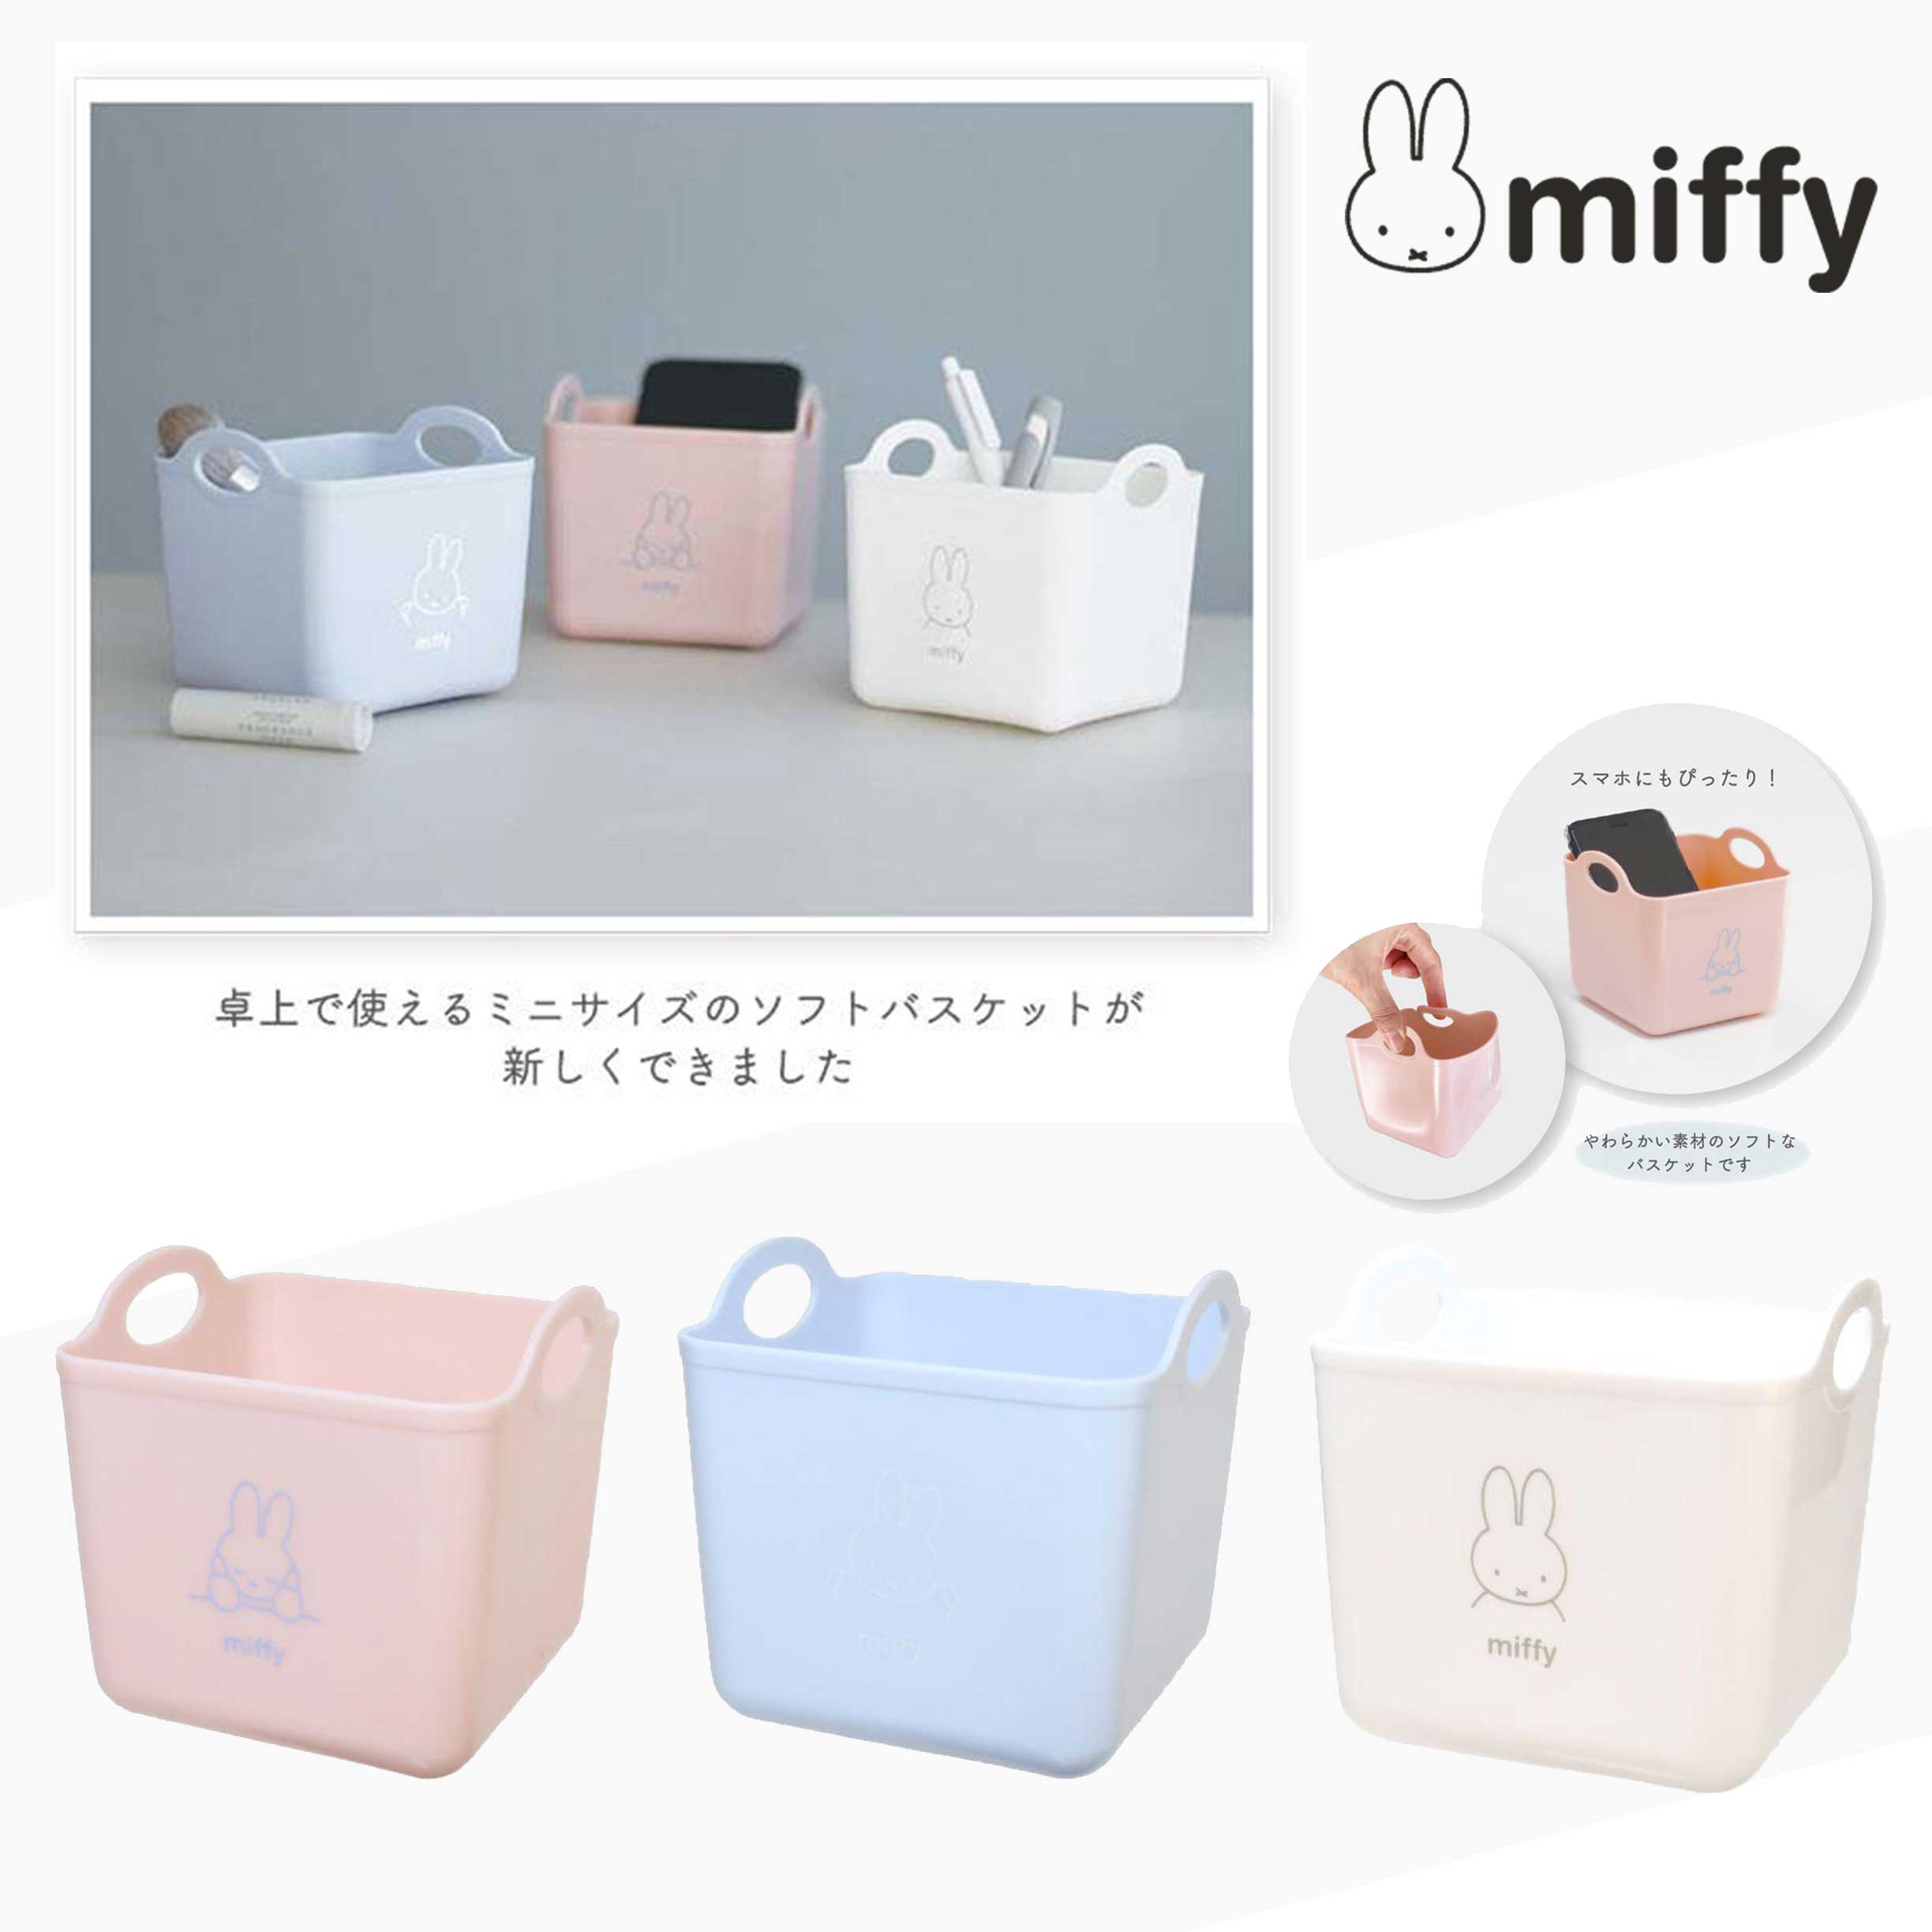 迷你置物籃-米菲兔 MIFFY 日本進口正版授權